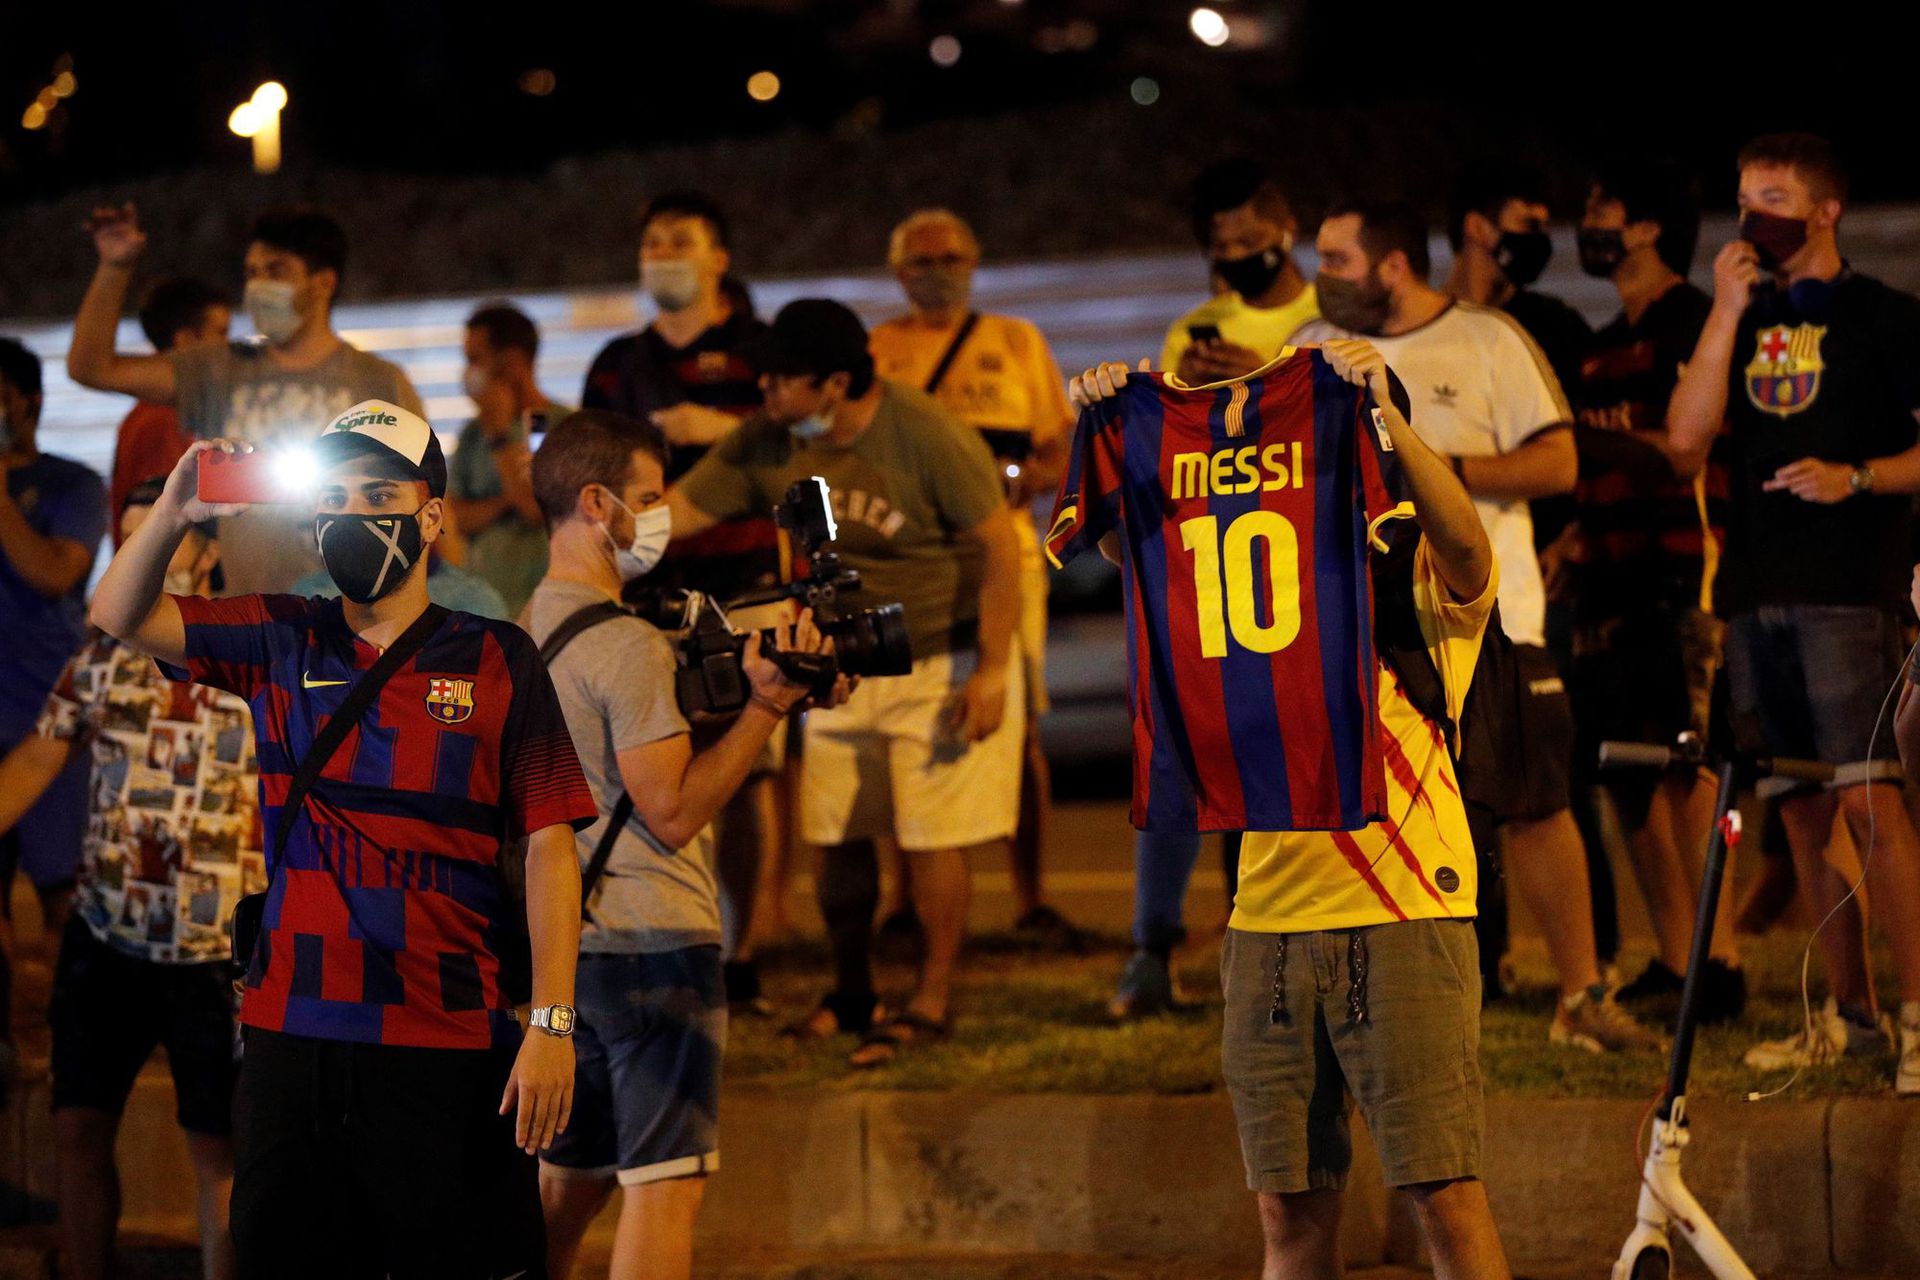 Messi távozásáról hallvaa barcelonai szurkolók azonnal a klubelnök lemondását követelték./ Fotó: MTI EPA EFE Alejandro Garcia